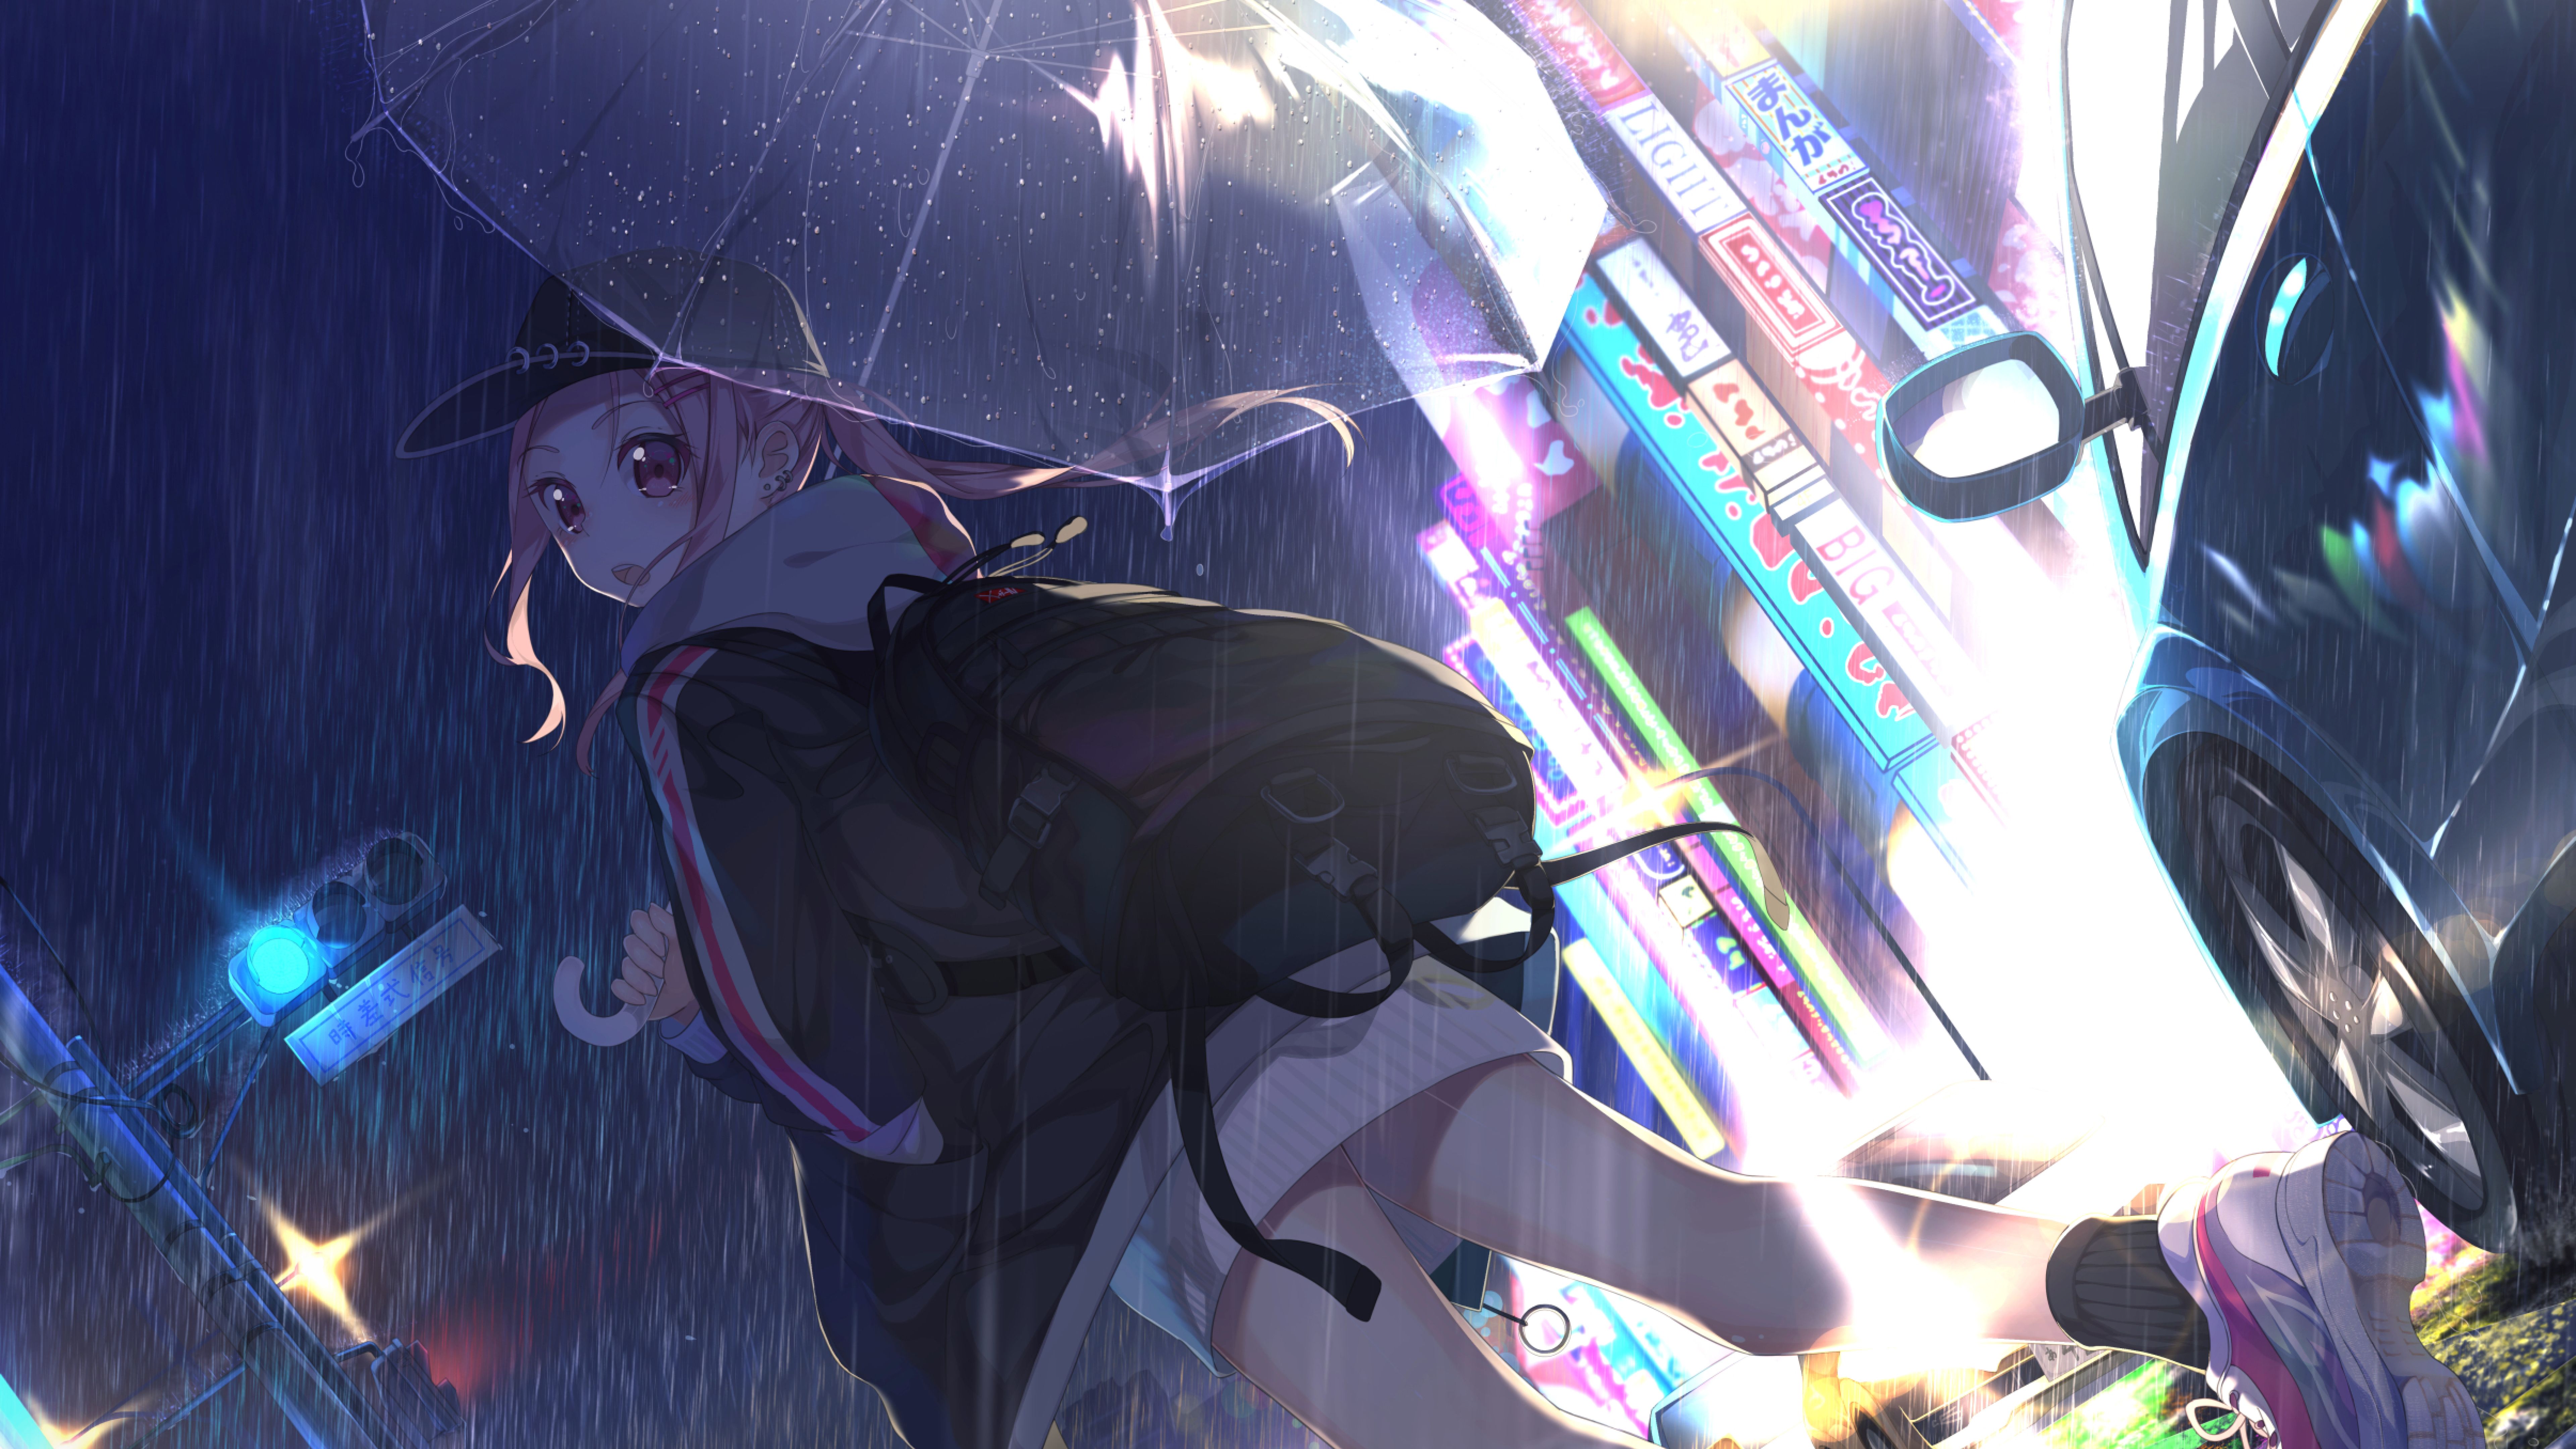 Anime Girl with Umbrella In Rain 8K Wallpaper, HD Anime